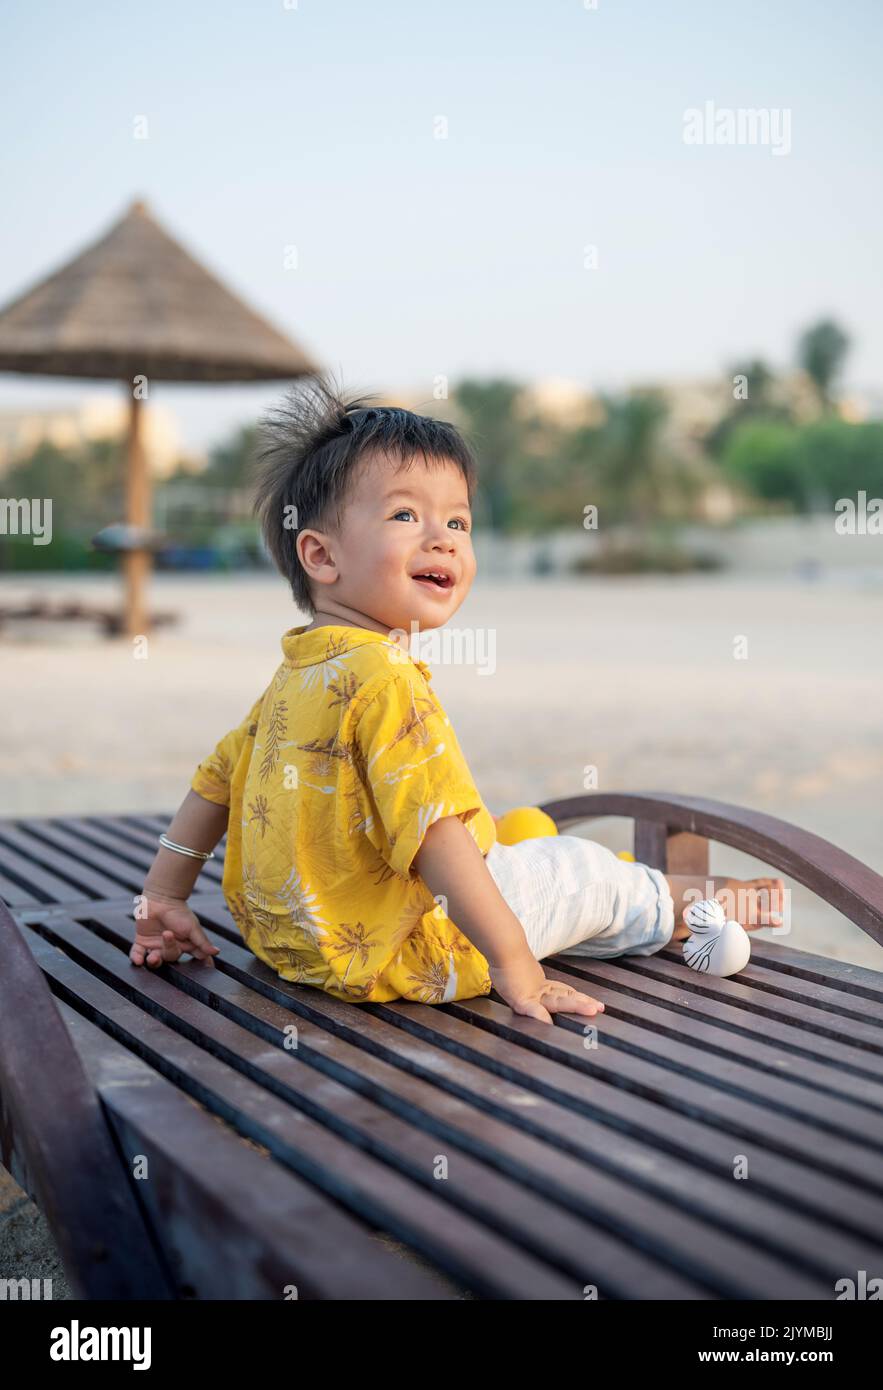 Bambino in vacanza sulla spiaggia seduto sul lettino al tramonto. Bambino maschio di un anno in vacanza al mare seduto sul lettino Foto Stock